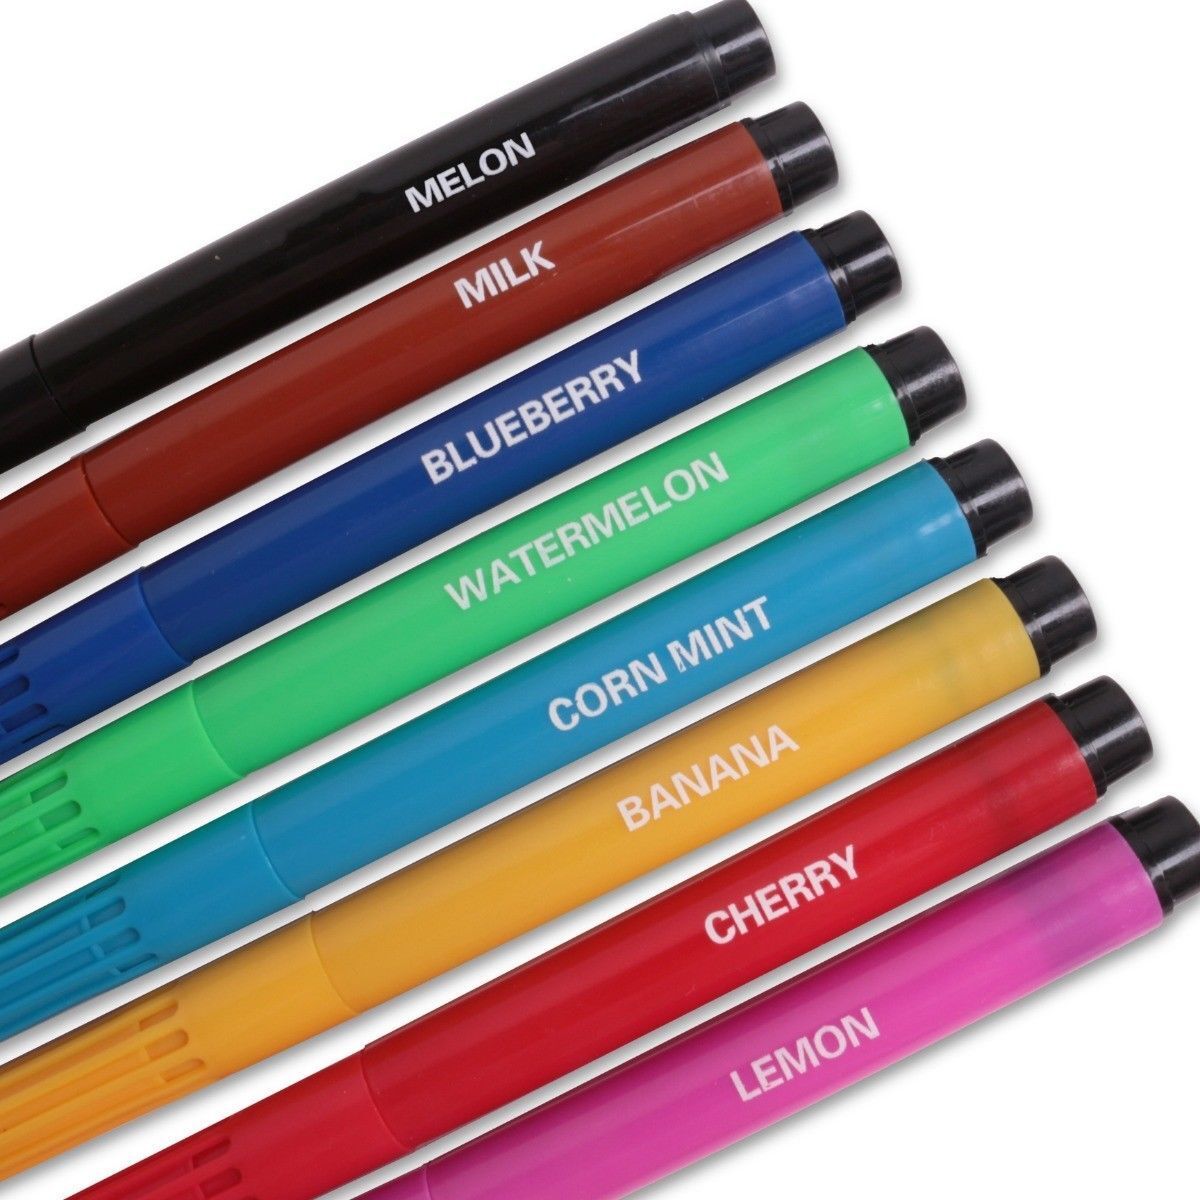 Beclen Harp Crayola 8 Scented Markers Pens Fruit Fragrance School Kids